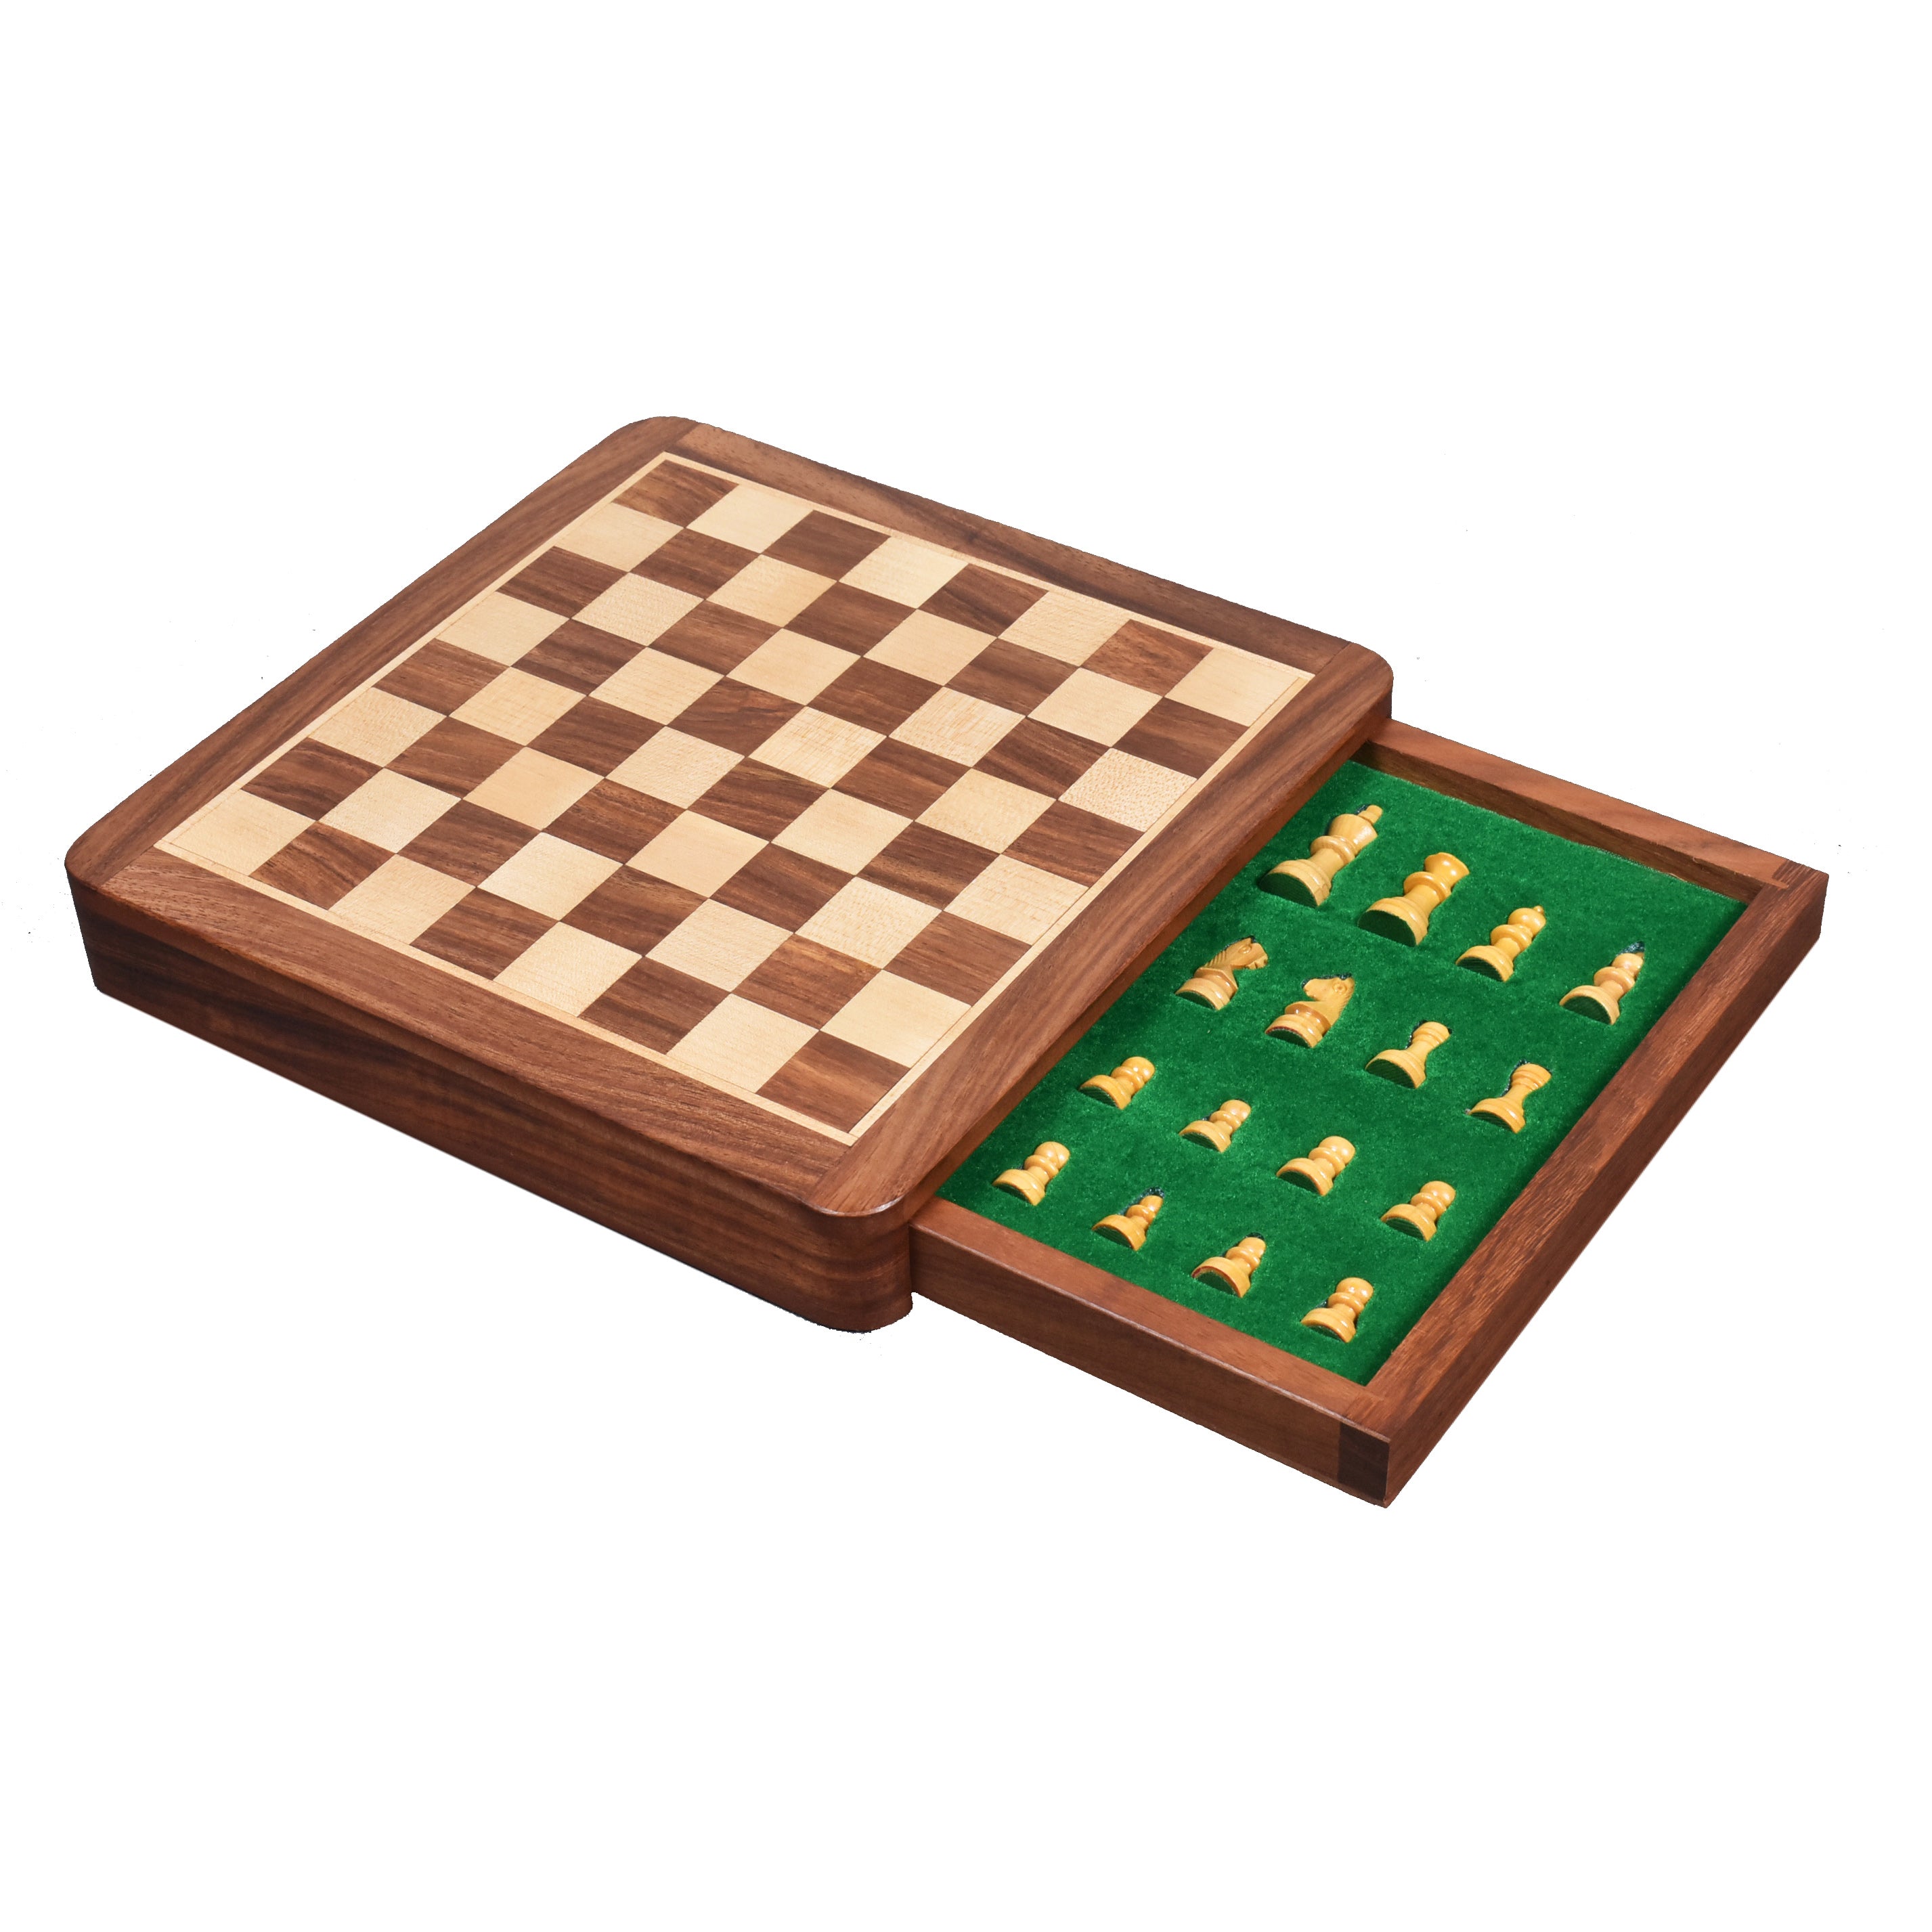 Jeu d'échecs en bois de voyage 15 X 15 cm